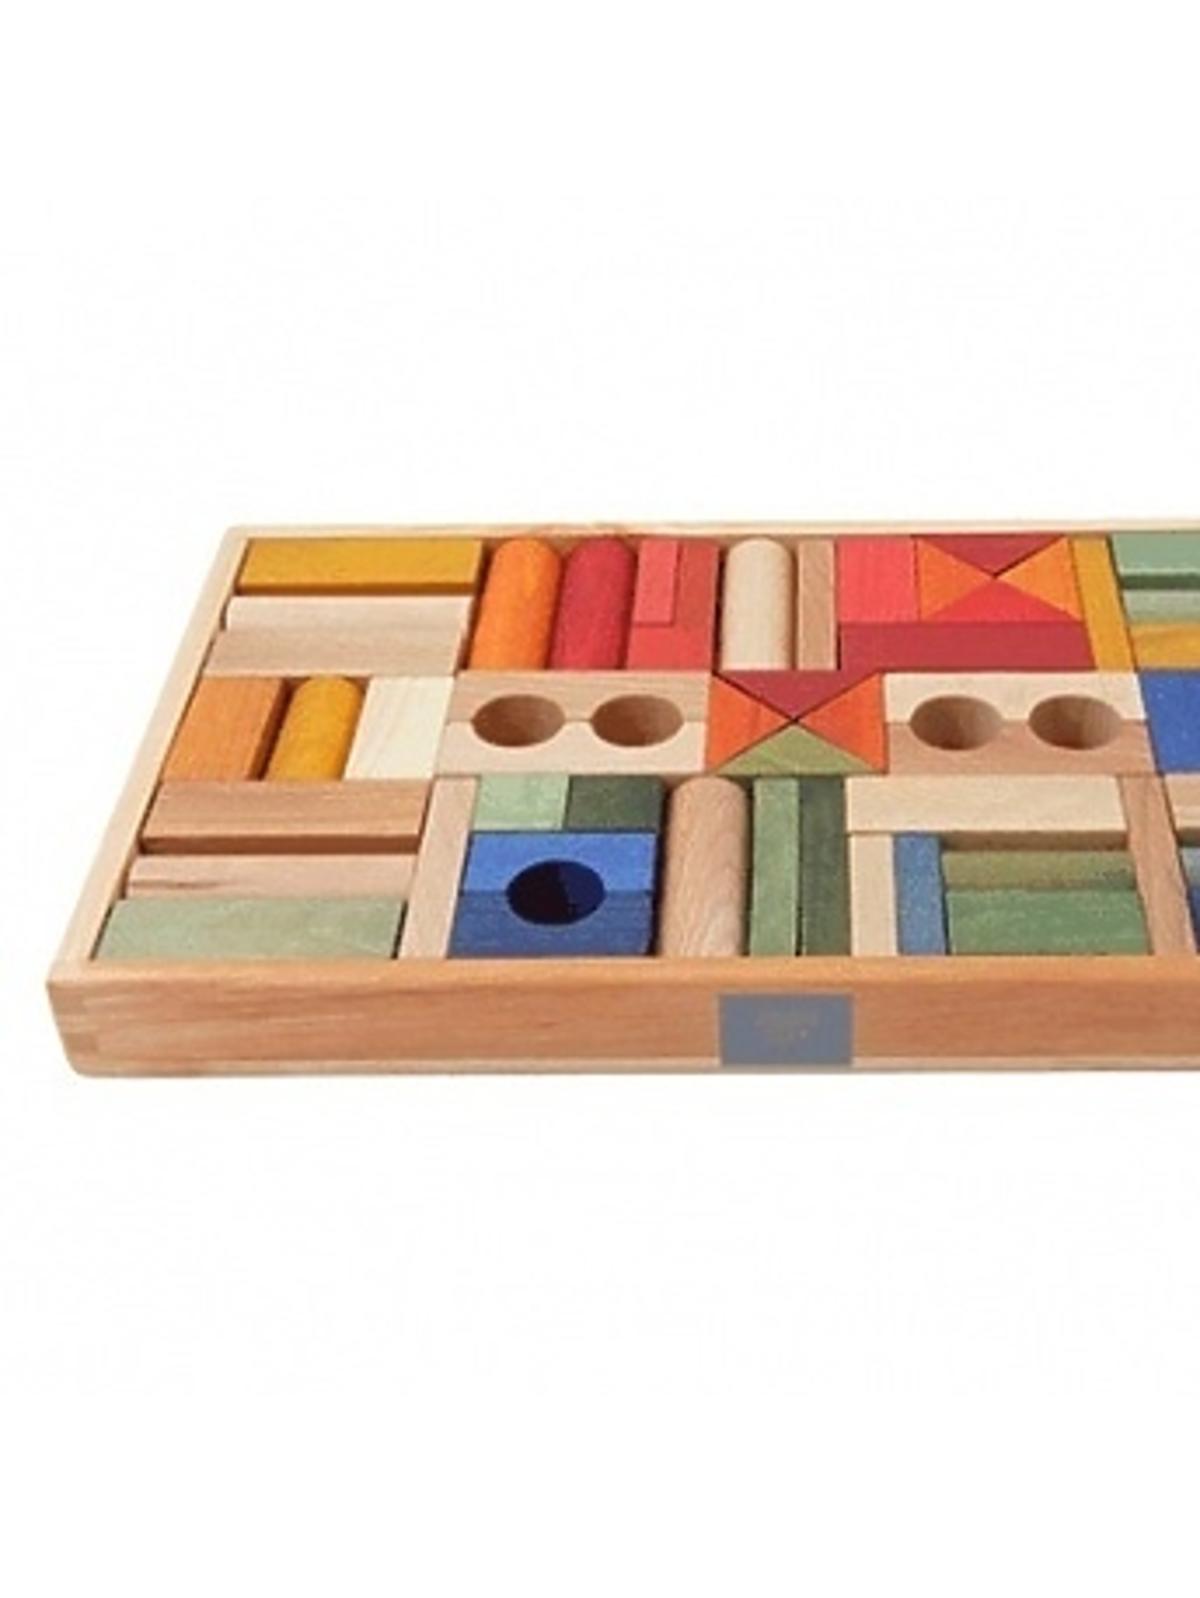 Wooden story drewniane kolorowe klocki w skrzynce 54 szt - katalog produktów dla dzieci na babyonlinepl.jpg